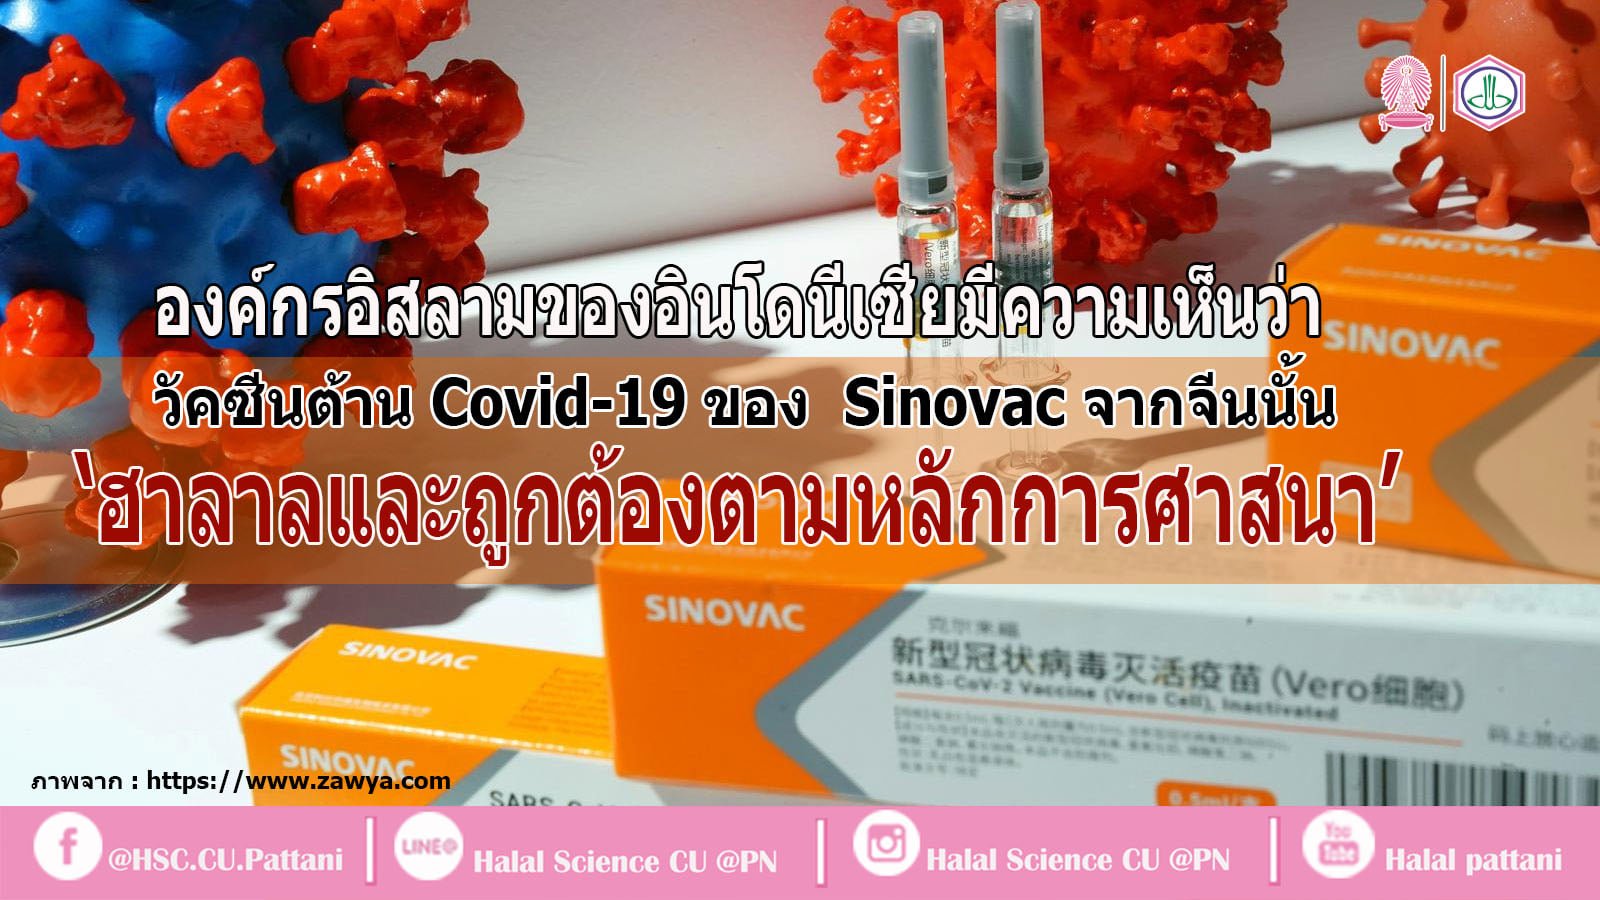 องค์กรอิสลามของอินโดนีเซียมีความเห็นว่า วัคซีนต้าน Covid-19 จาก Sinovac ของจีน นั้น